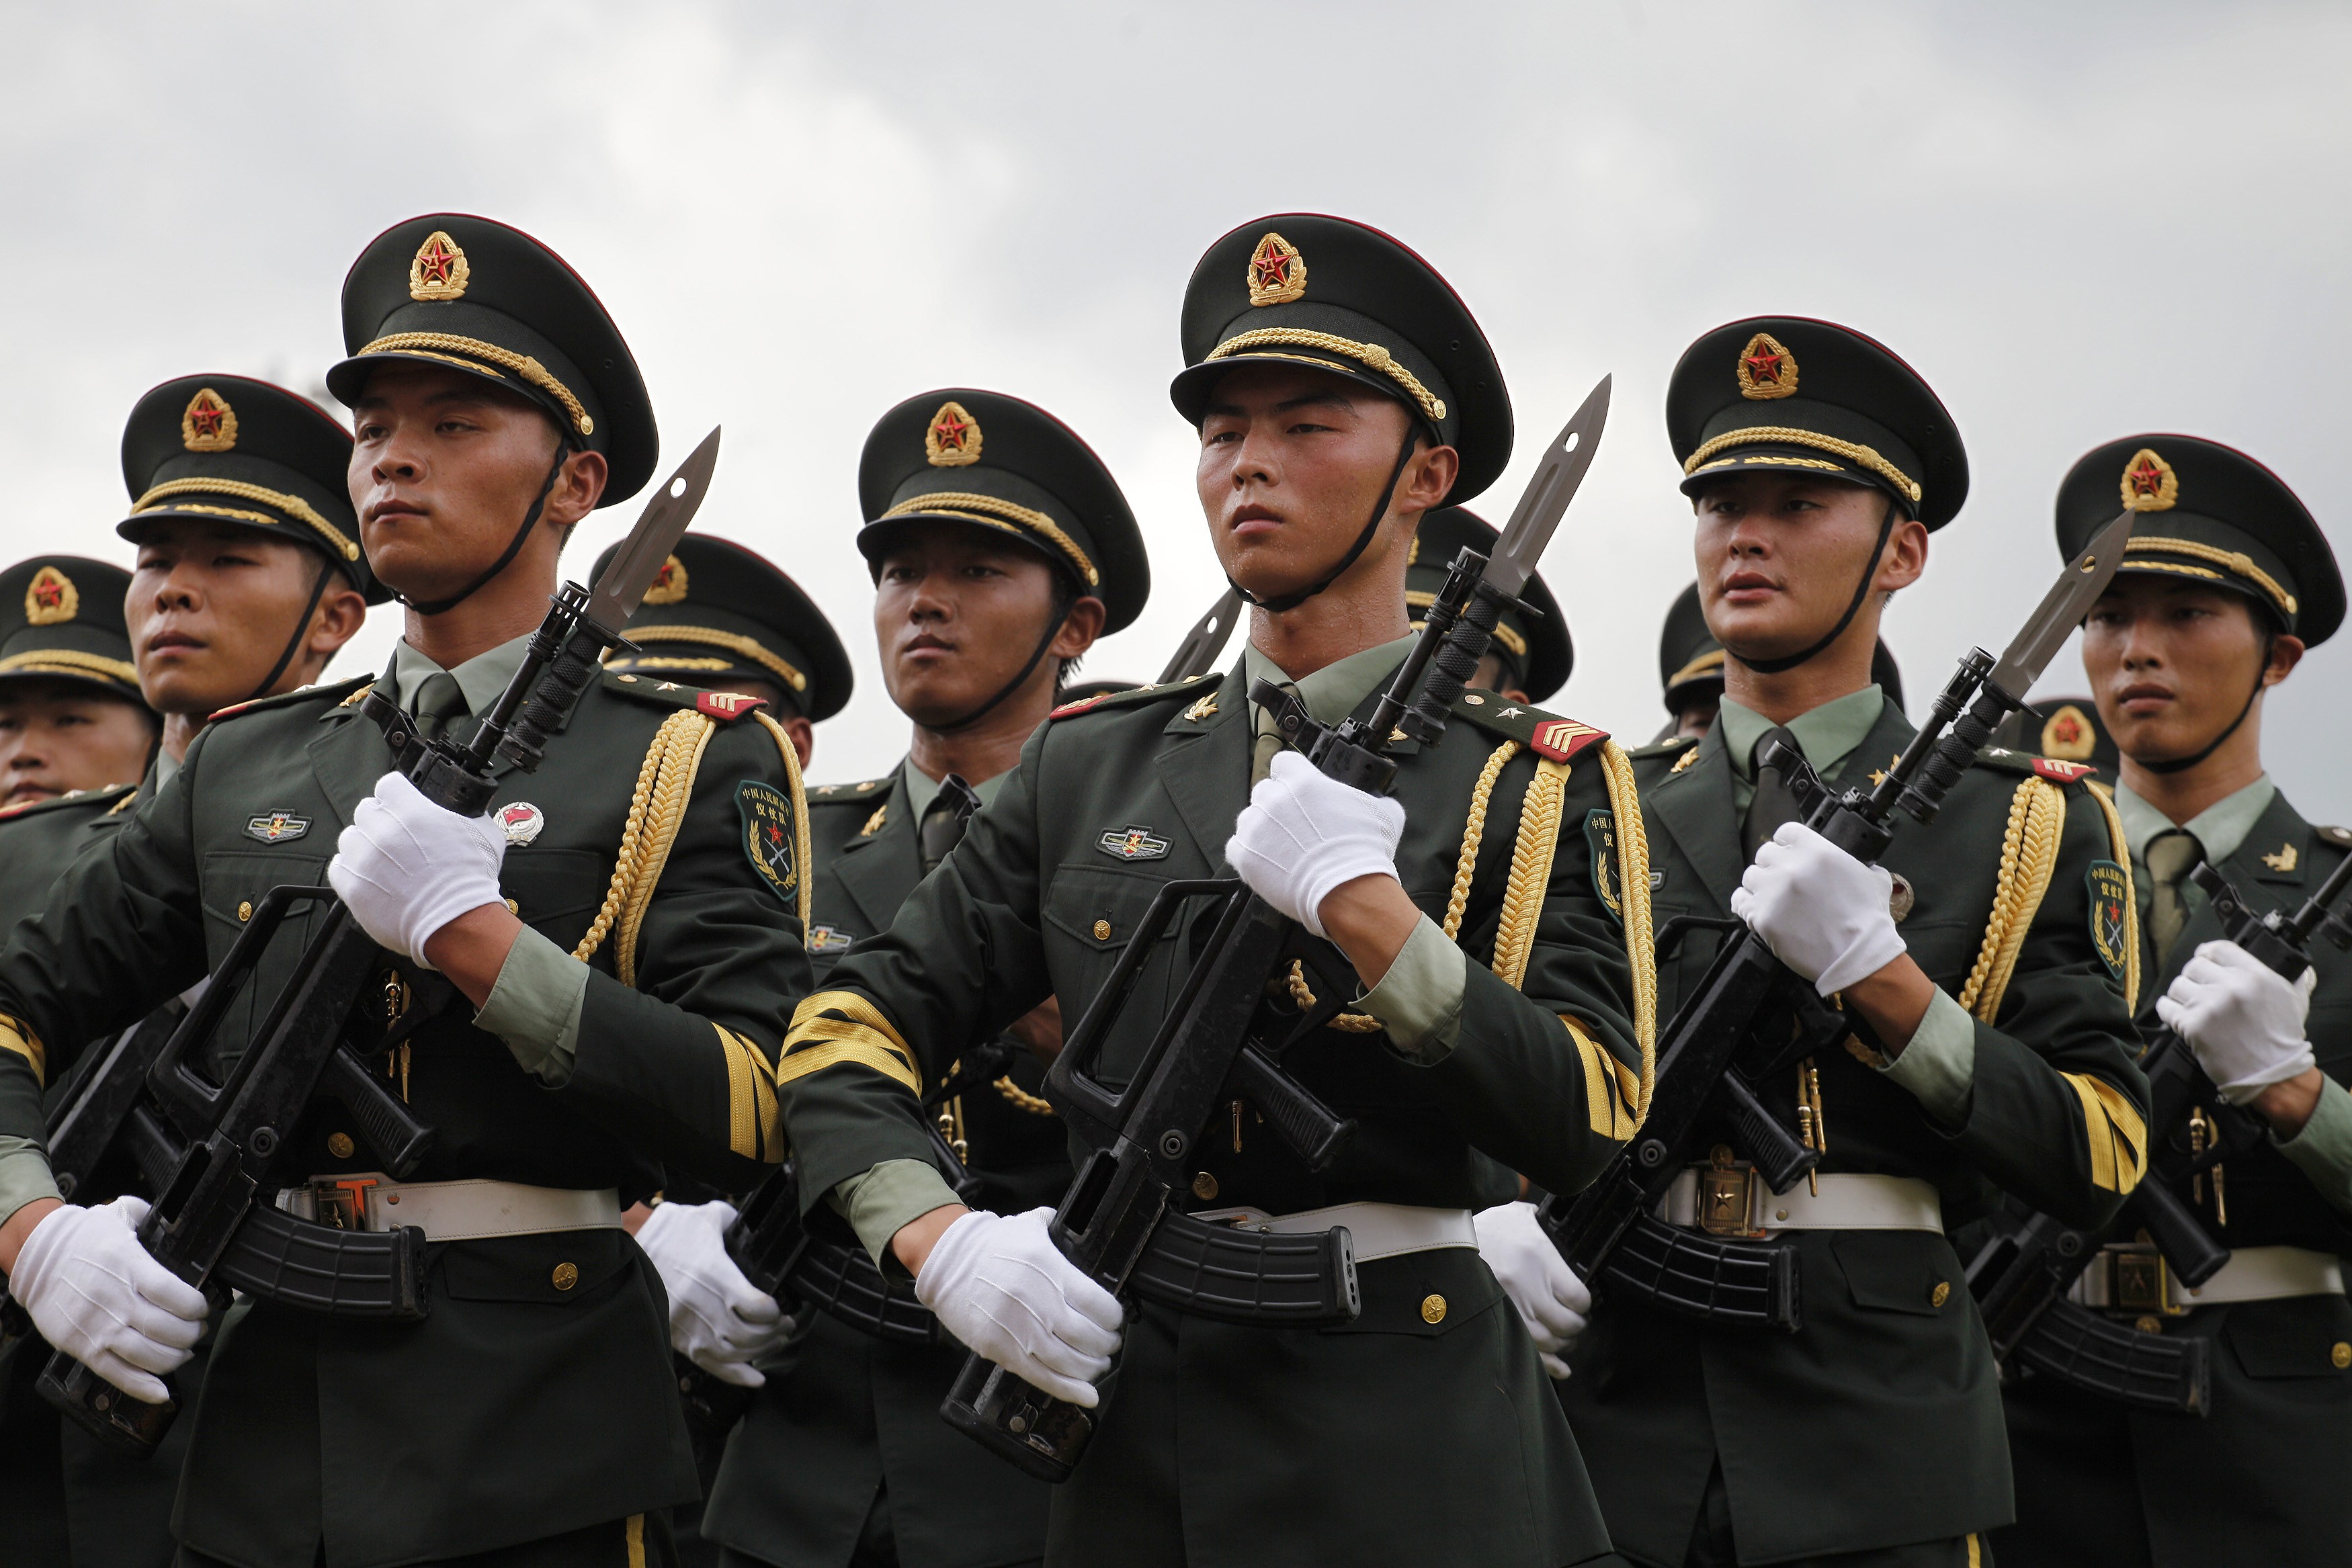 بعد تهديد “داعش”، قد تضطر الصين إلى الخروج من الهوامش في الشرق الأوسط